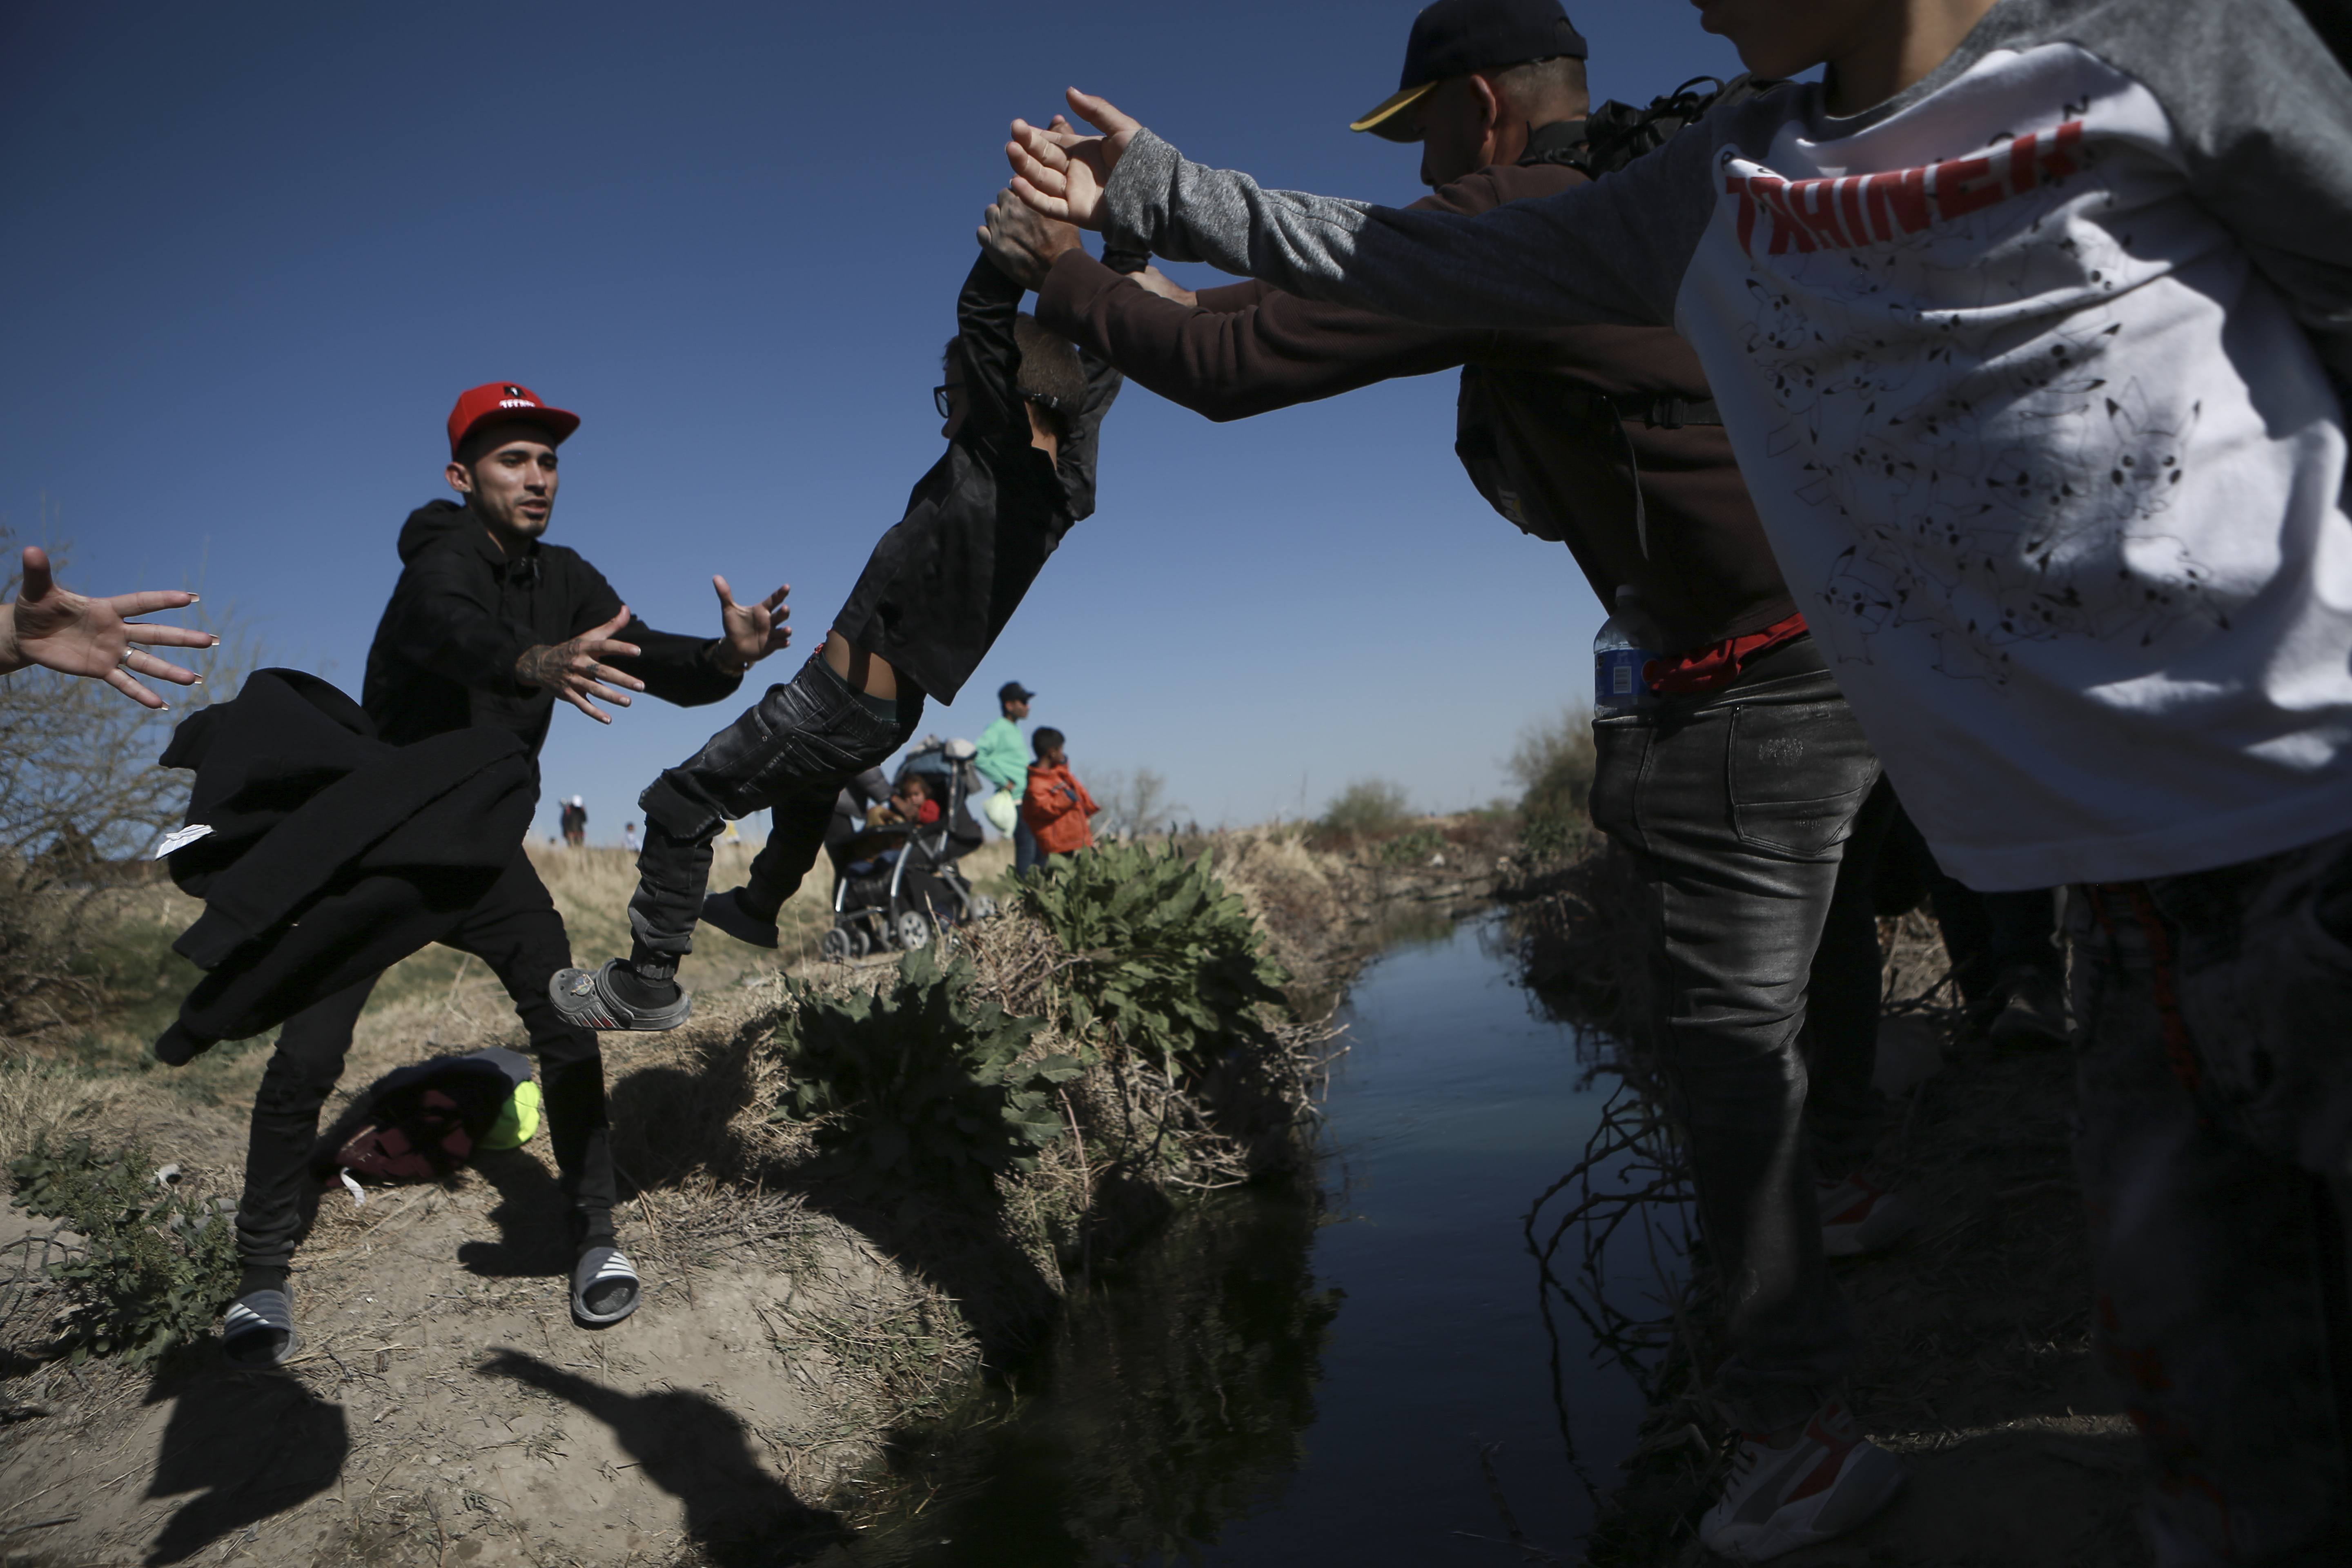 Familias migrantes se lanzaron al río Bravo para cruzar a EEUU pese a riesgos  